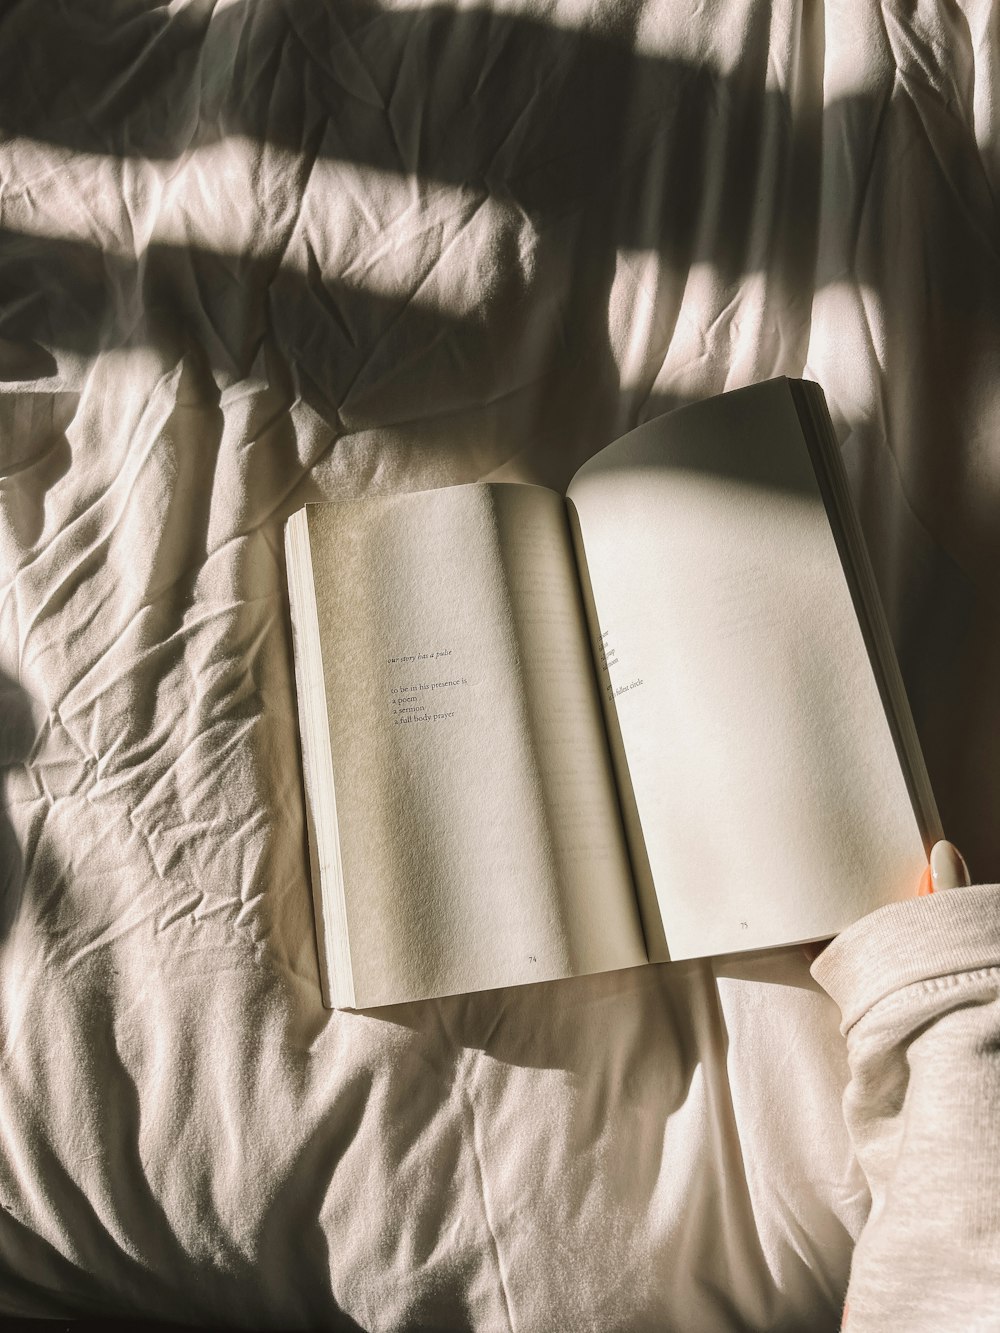 Una persona está leyendo un libro en una cama